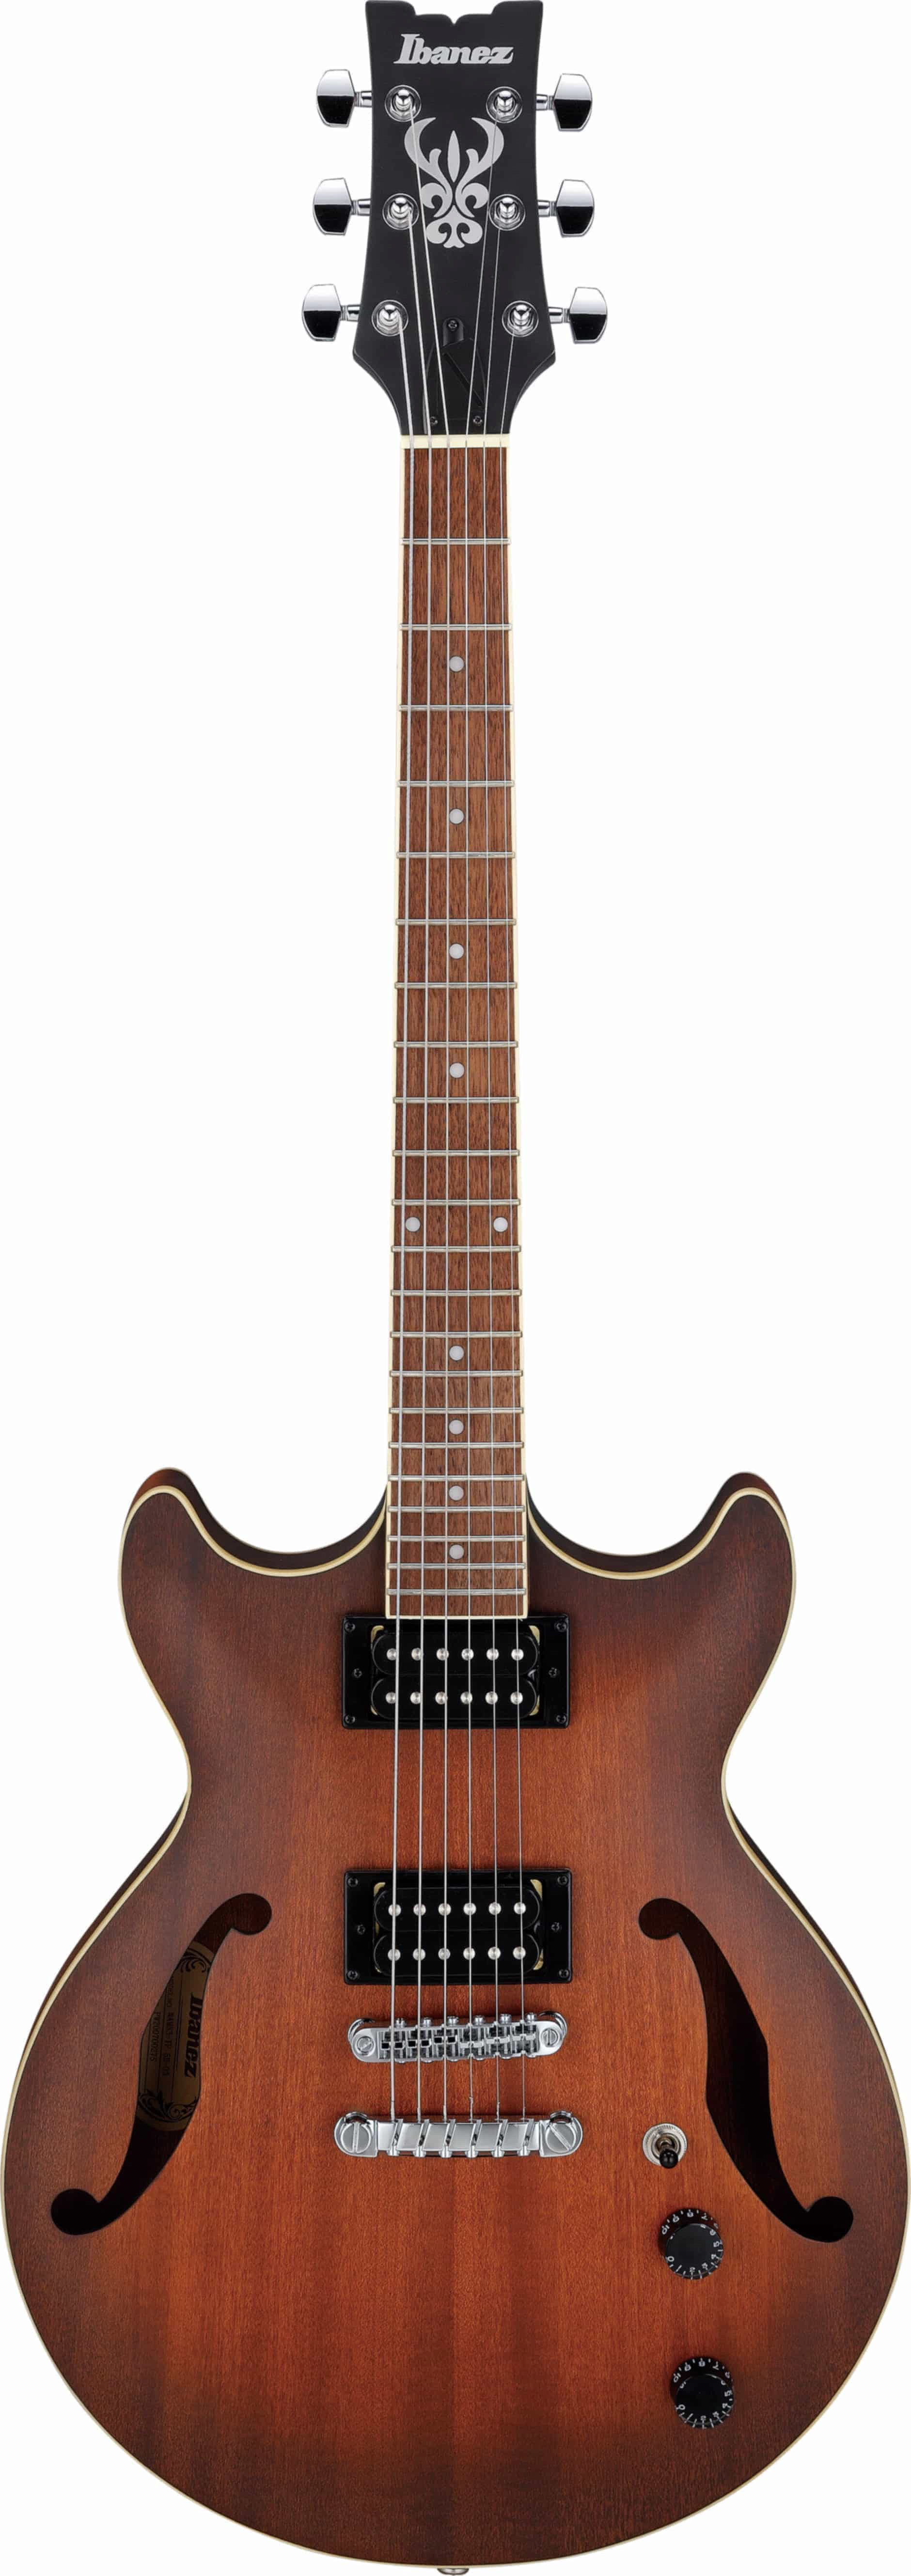 Ibanez AM53-TF полуакустическая гитара | Продукция IBANEZ